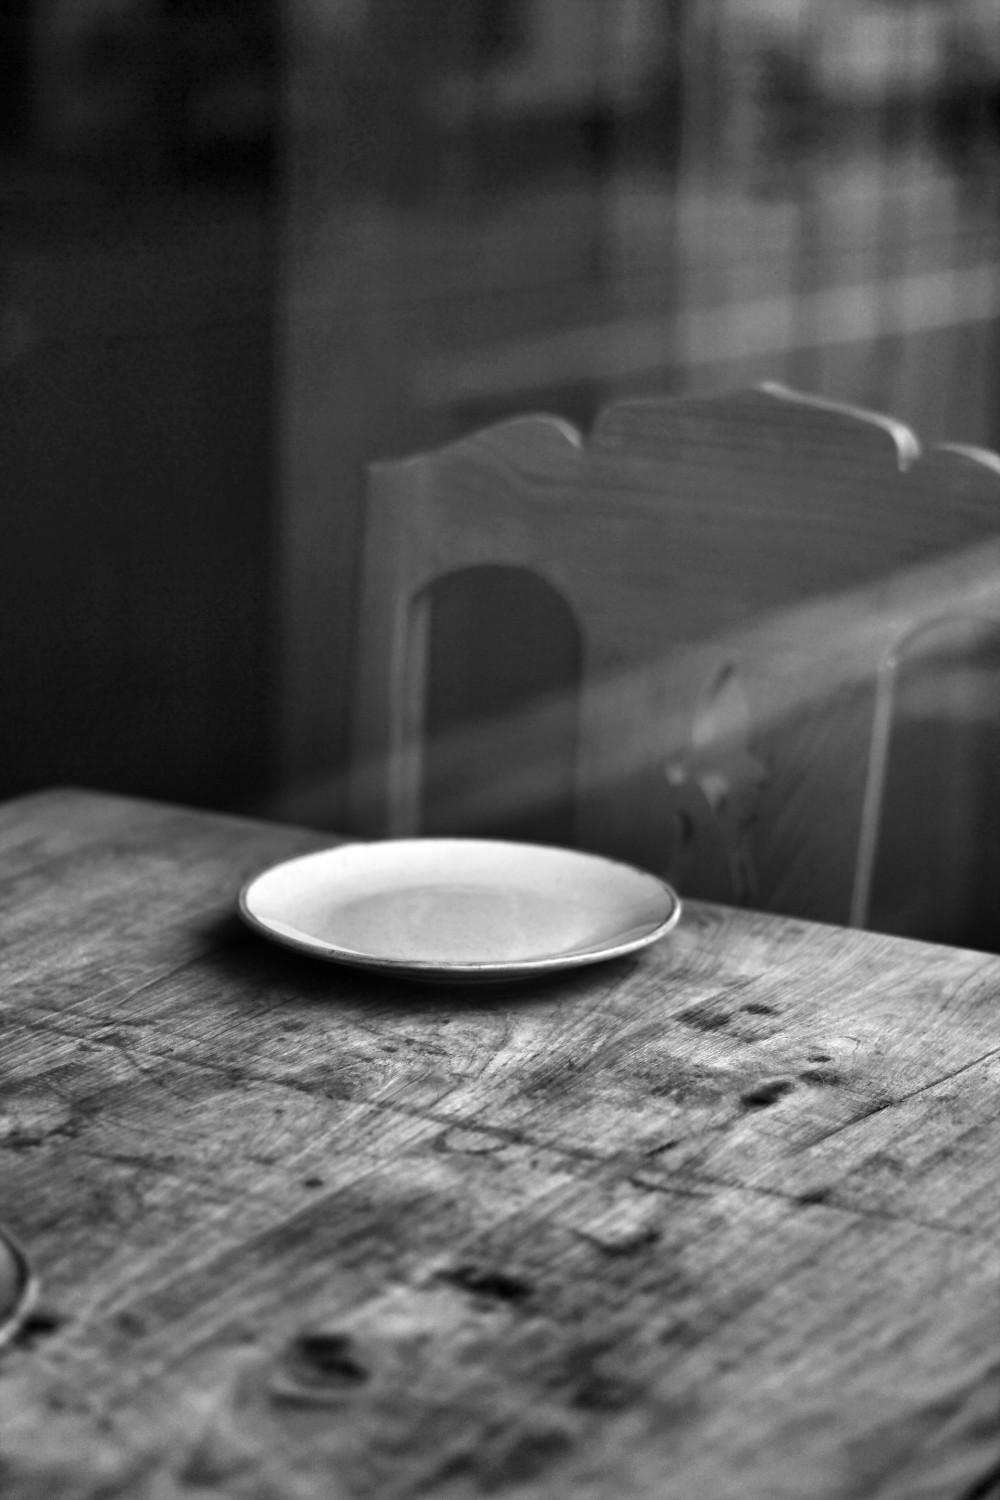 Тарелка на столе, эффект уставшей тарелки